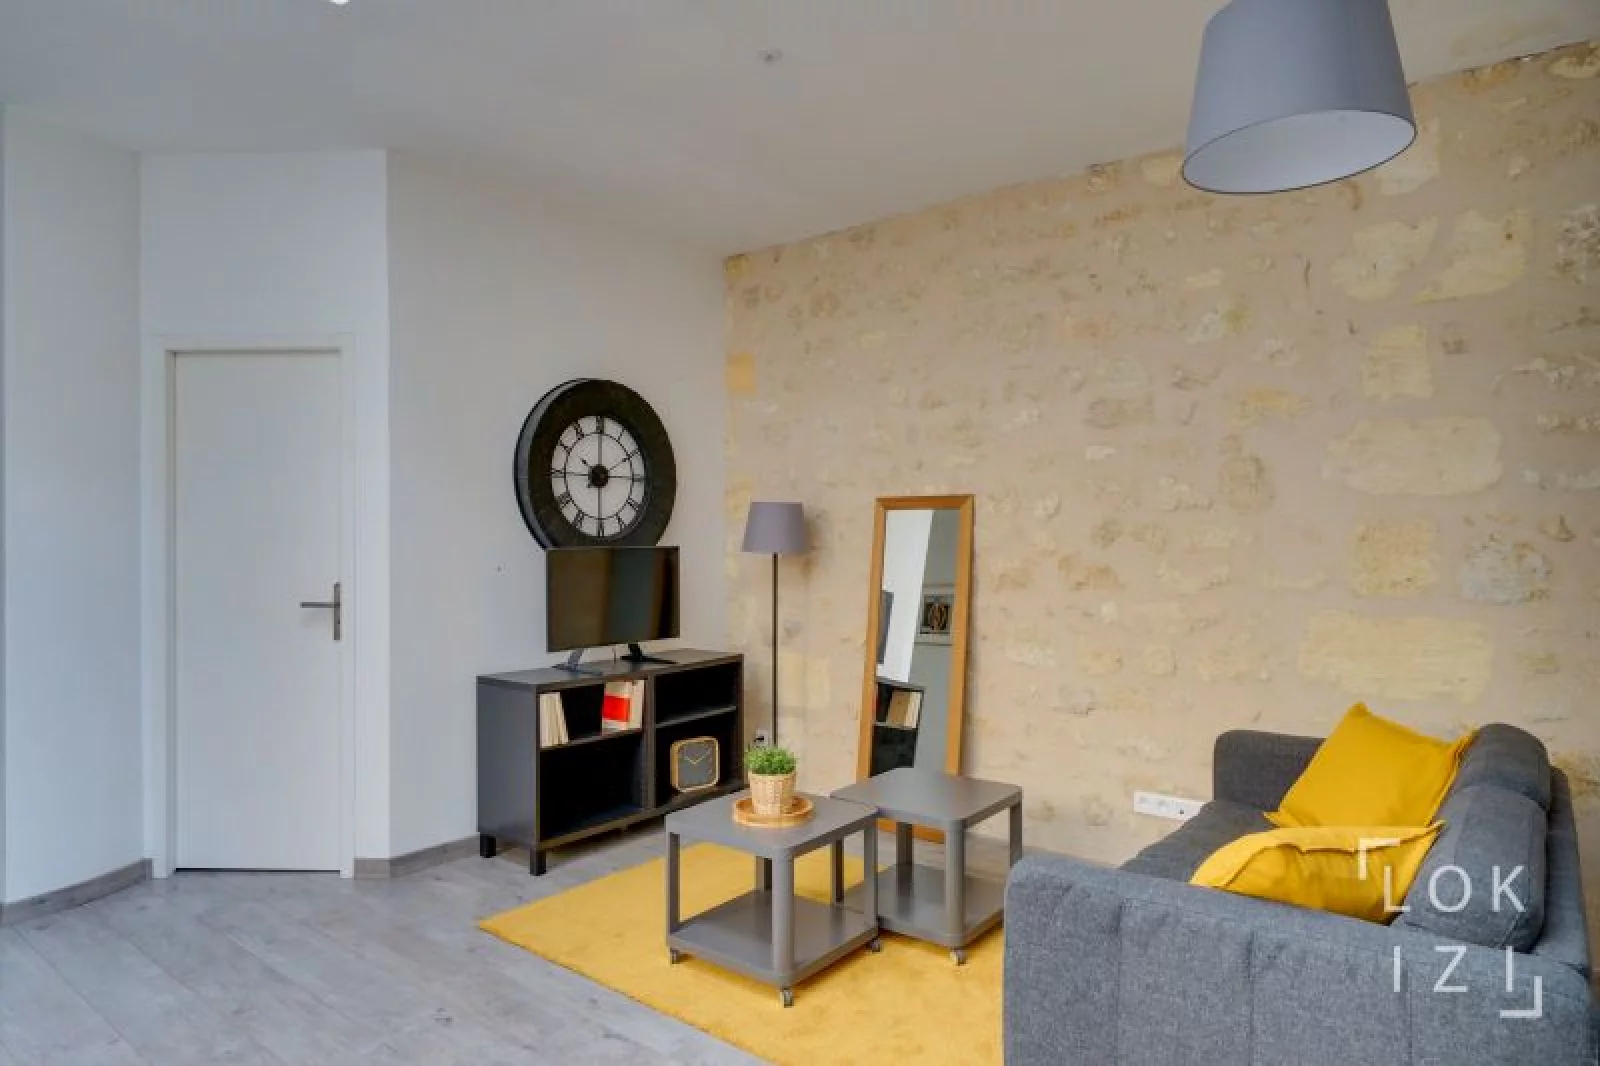 Location appartement meublé 4 pièces 100m² (Bordeaux - Chartrons)